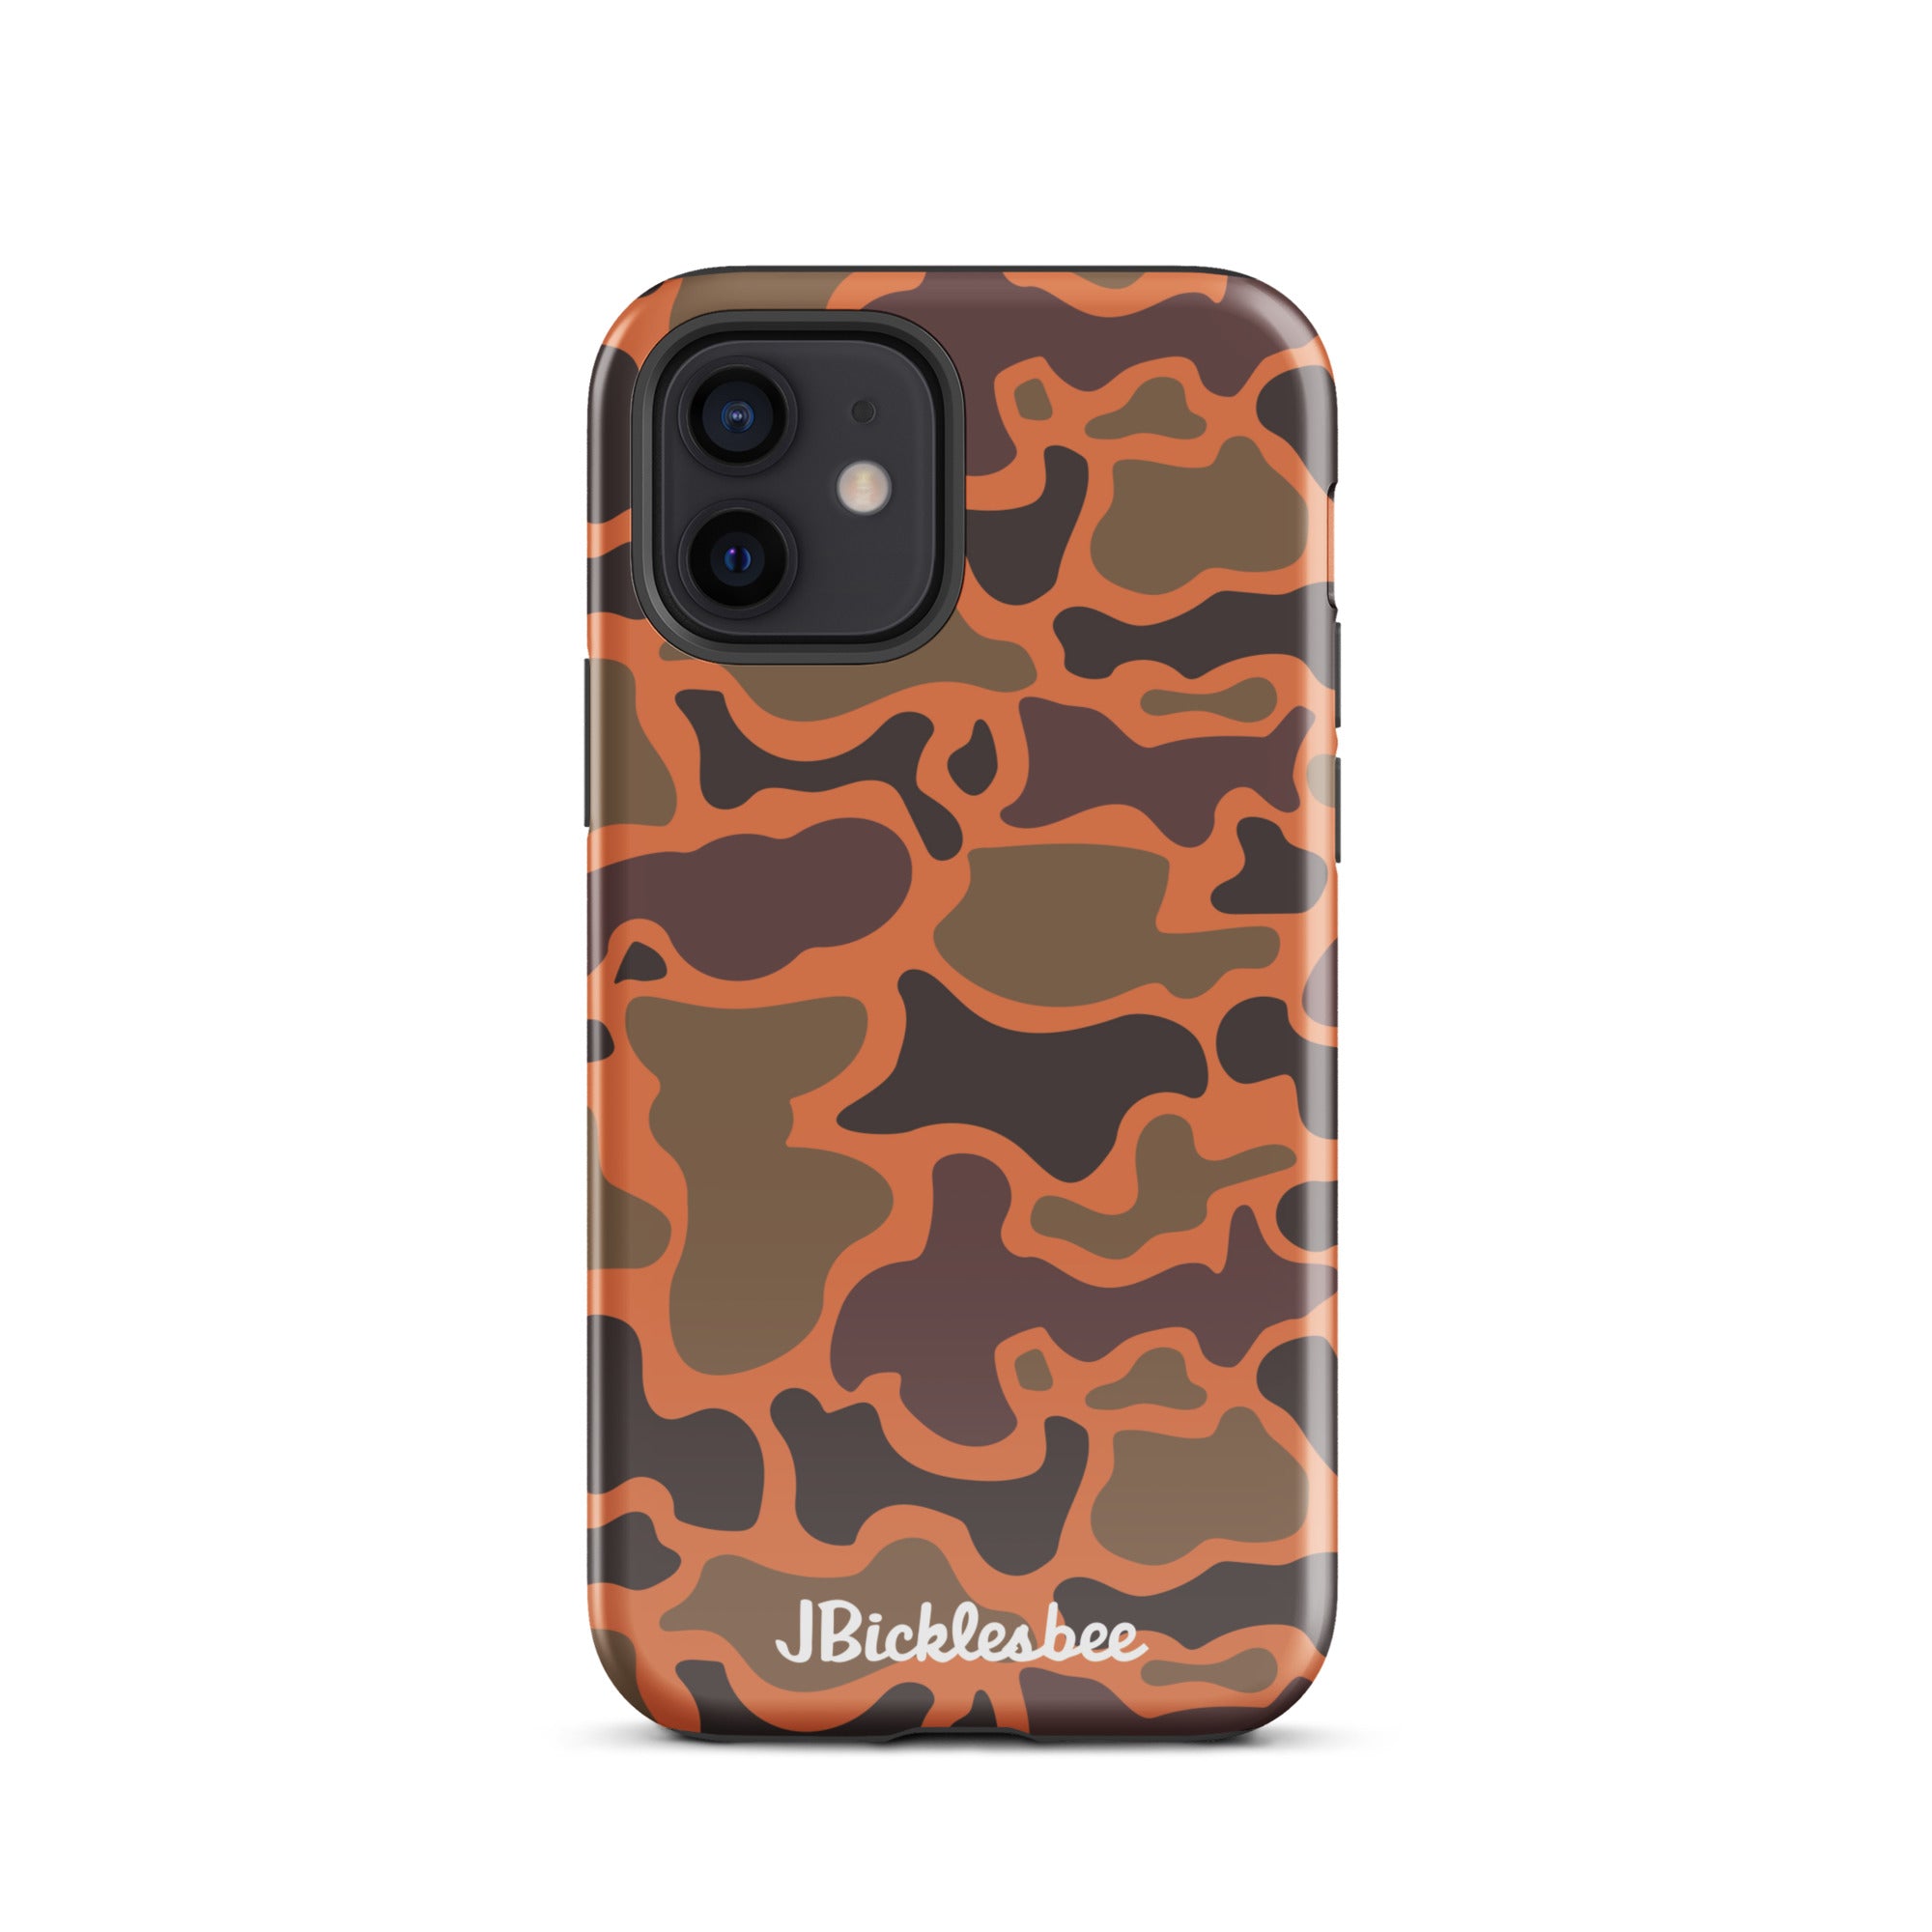 Retro Hunter Safety Camo iPhone Tough Case